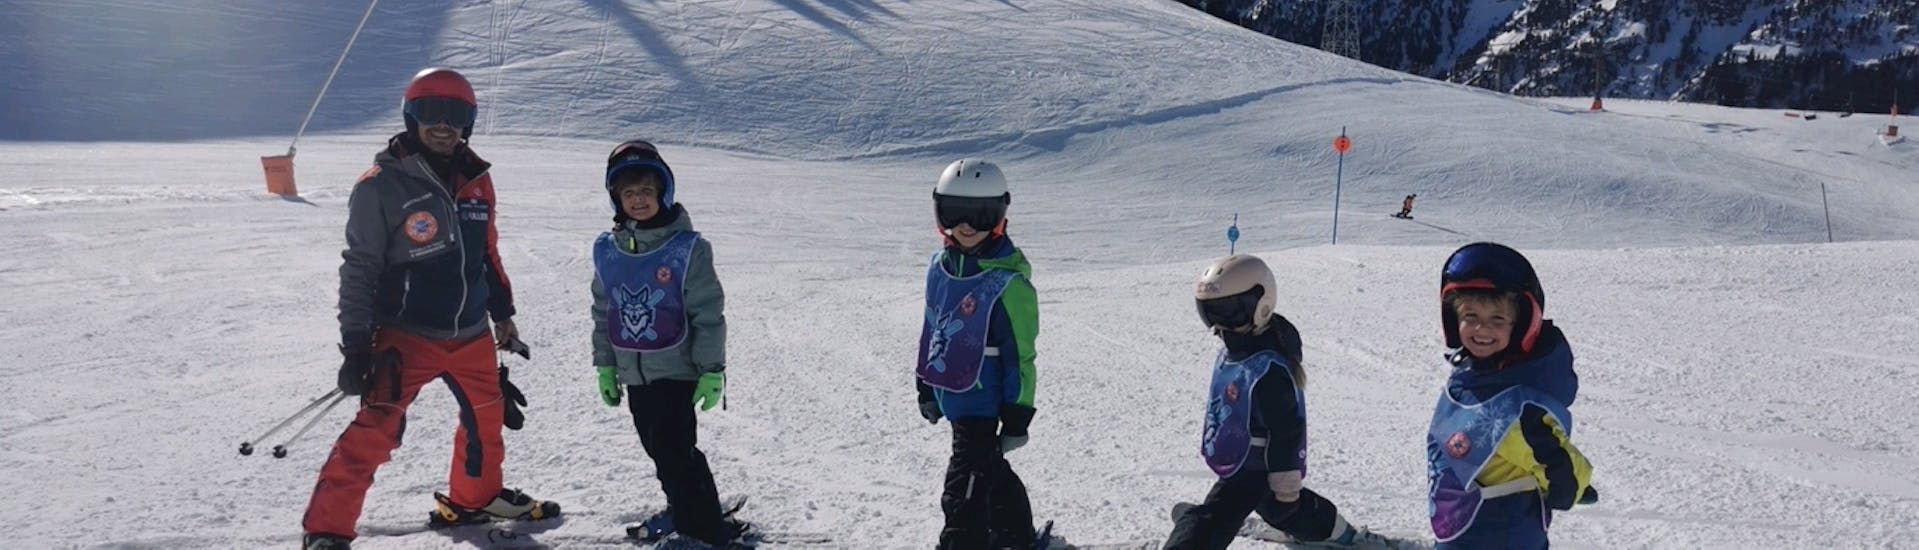 Cours de ski Enfants (6-16 ans) pour Débutants.